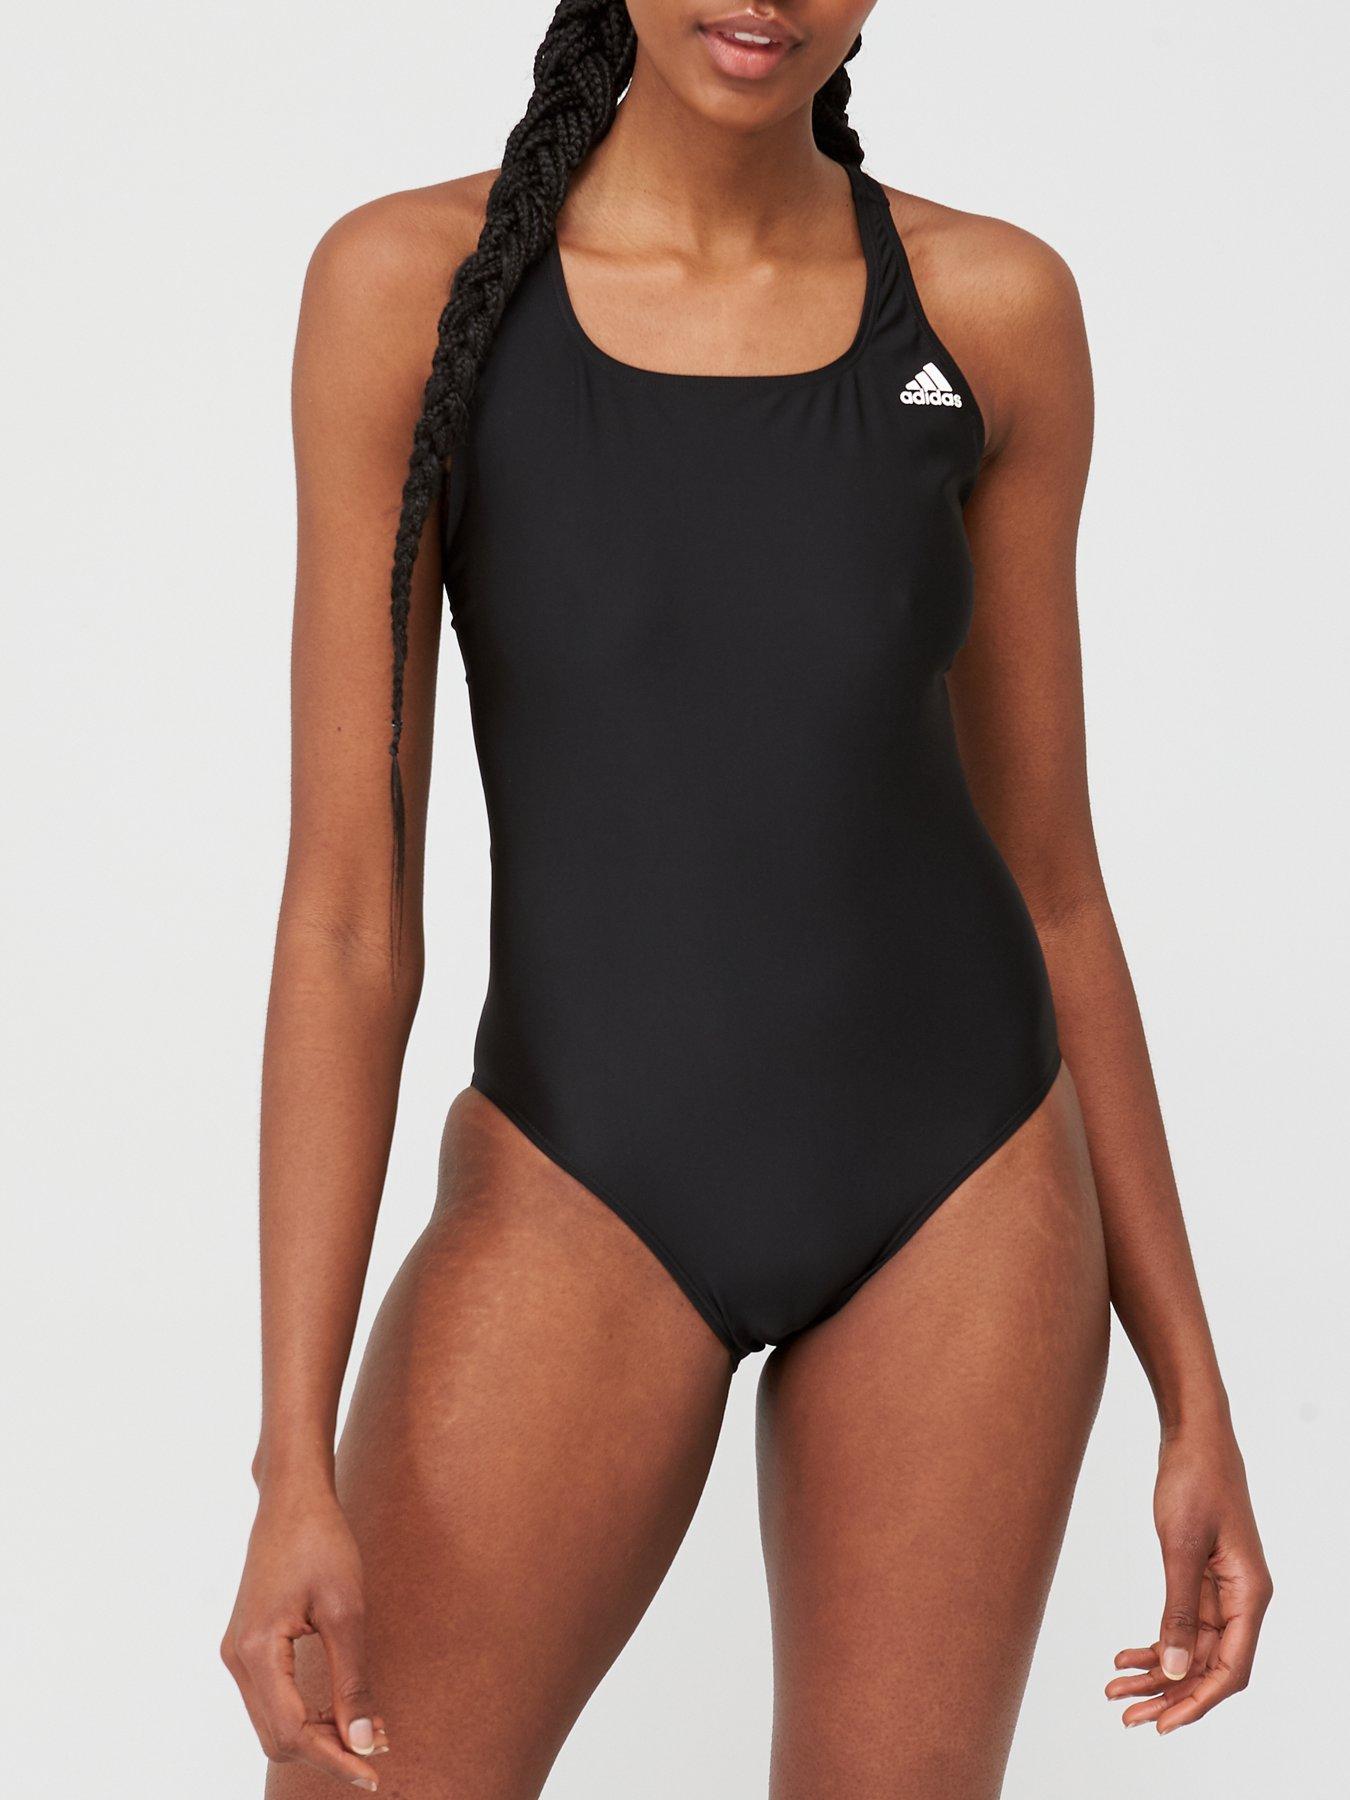 ladies adidas swimming costume